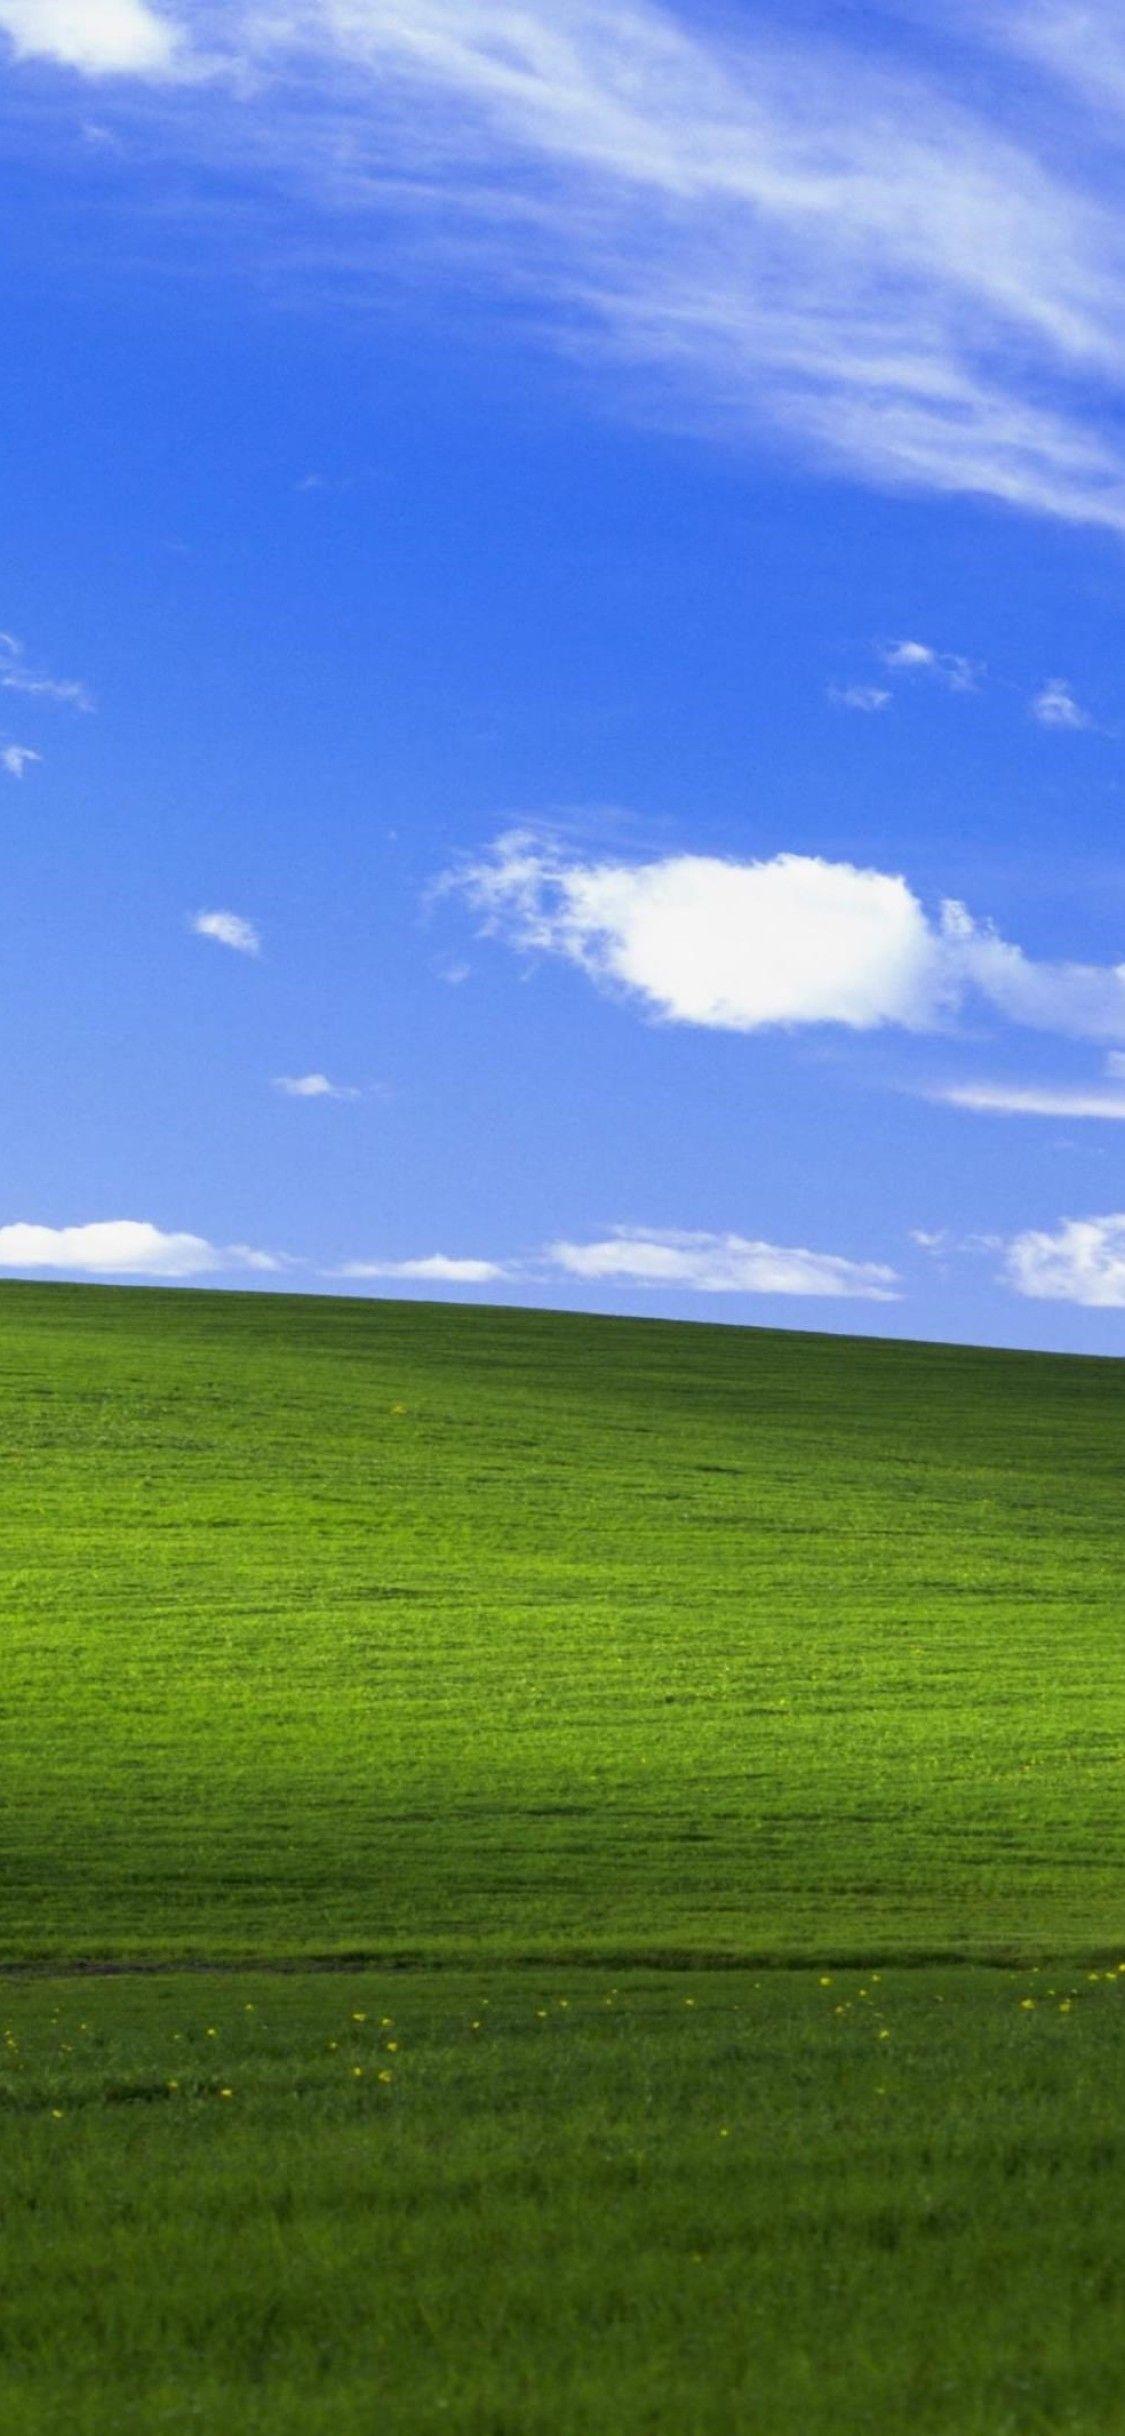 Cập nhật hình nền động cho Win XP để mang lại cho máy tính của bạn một vẻ đẹp mới mẻ và hiện đại. Hãy tận hưởng những đường nét động tuyệt vời và chất lượng hình ảnh tuyệt đỉnh trên màn hình nền của bạn.